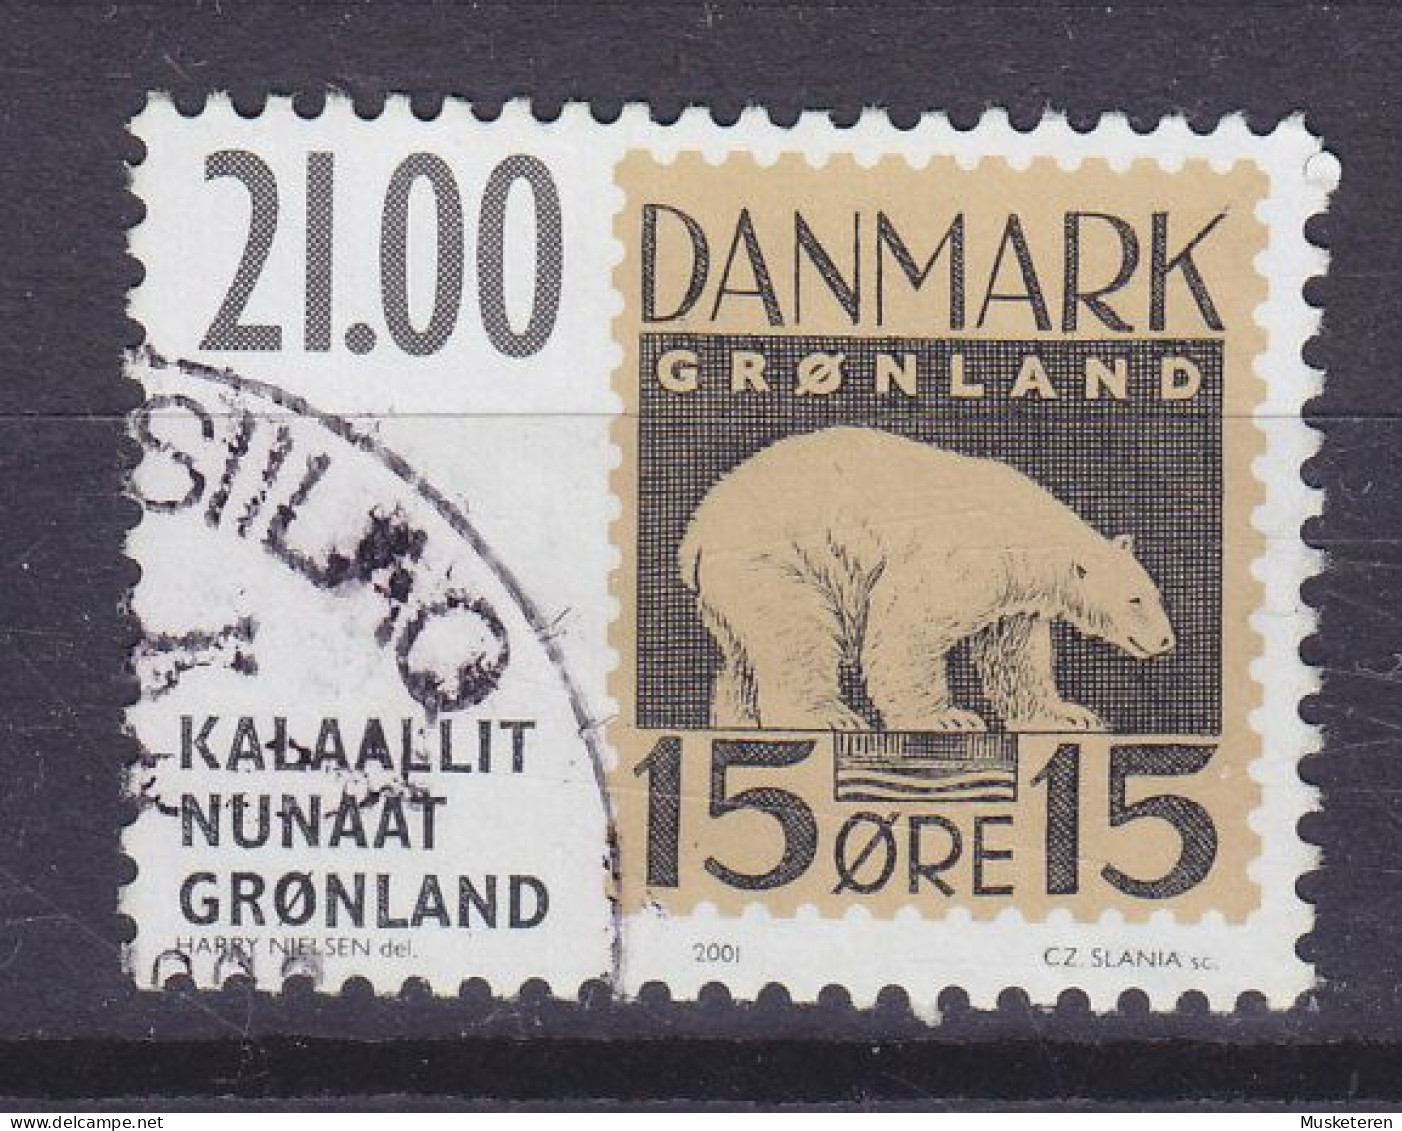 Greenland 2001 Mi. 373, 21.00 Kr Internationale Briefmarken Ausstellung HAFNIA '01 'Eisbär' Polar Bear - Gebraucht